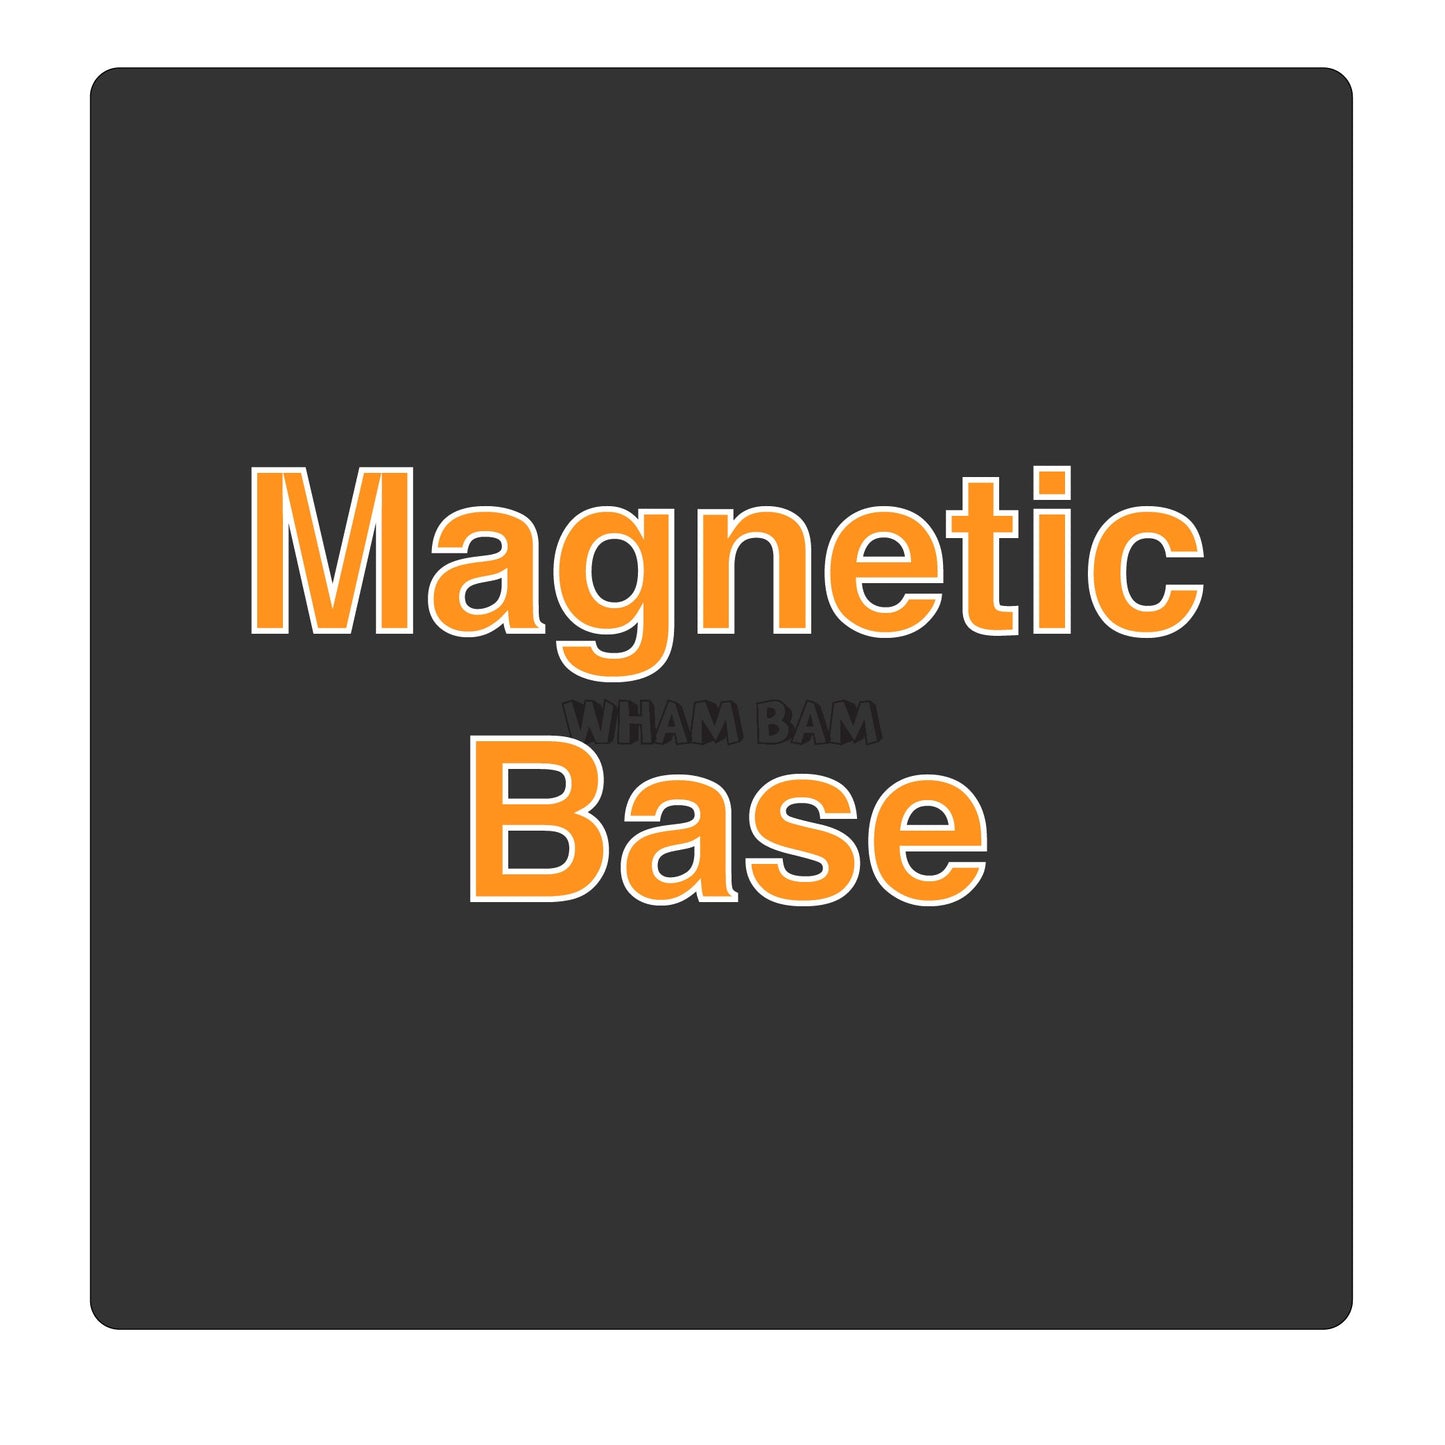 Magnetic Base - 430 x 430 - Elegoo Neptune 3 Max, Neptune 4 Max, and AnyCubic Kobra 2 Max